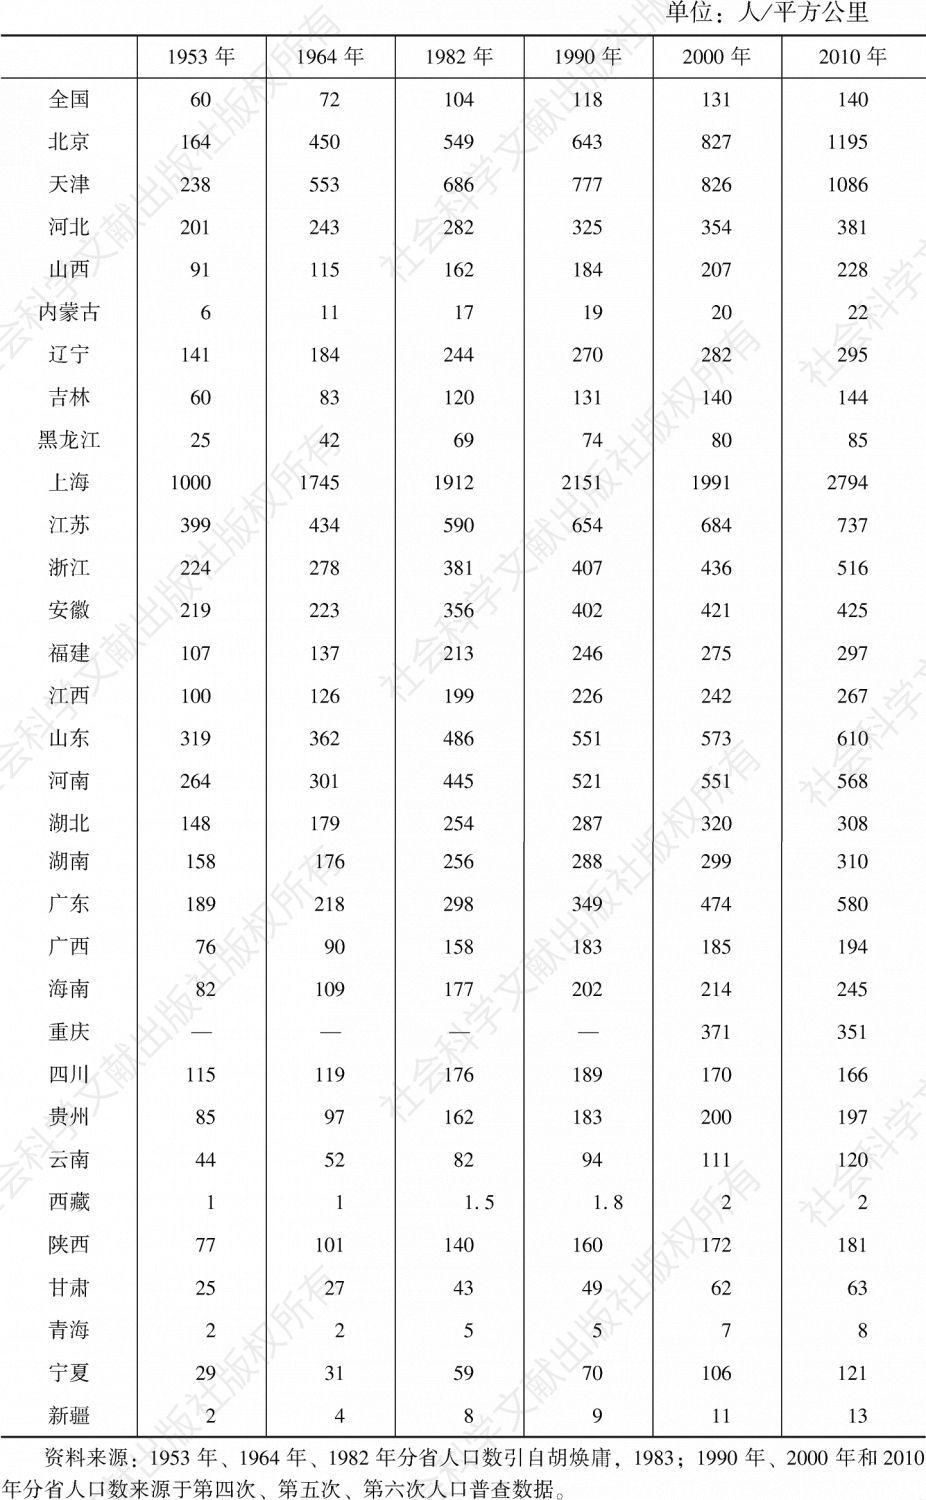 表4-7 中国各省份人口密度（不含港澳台）